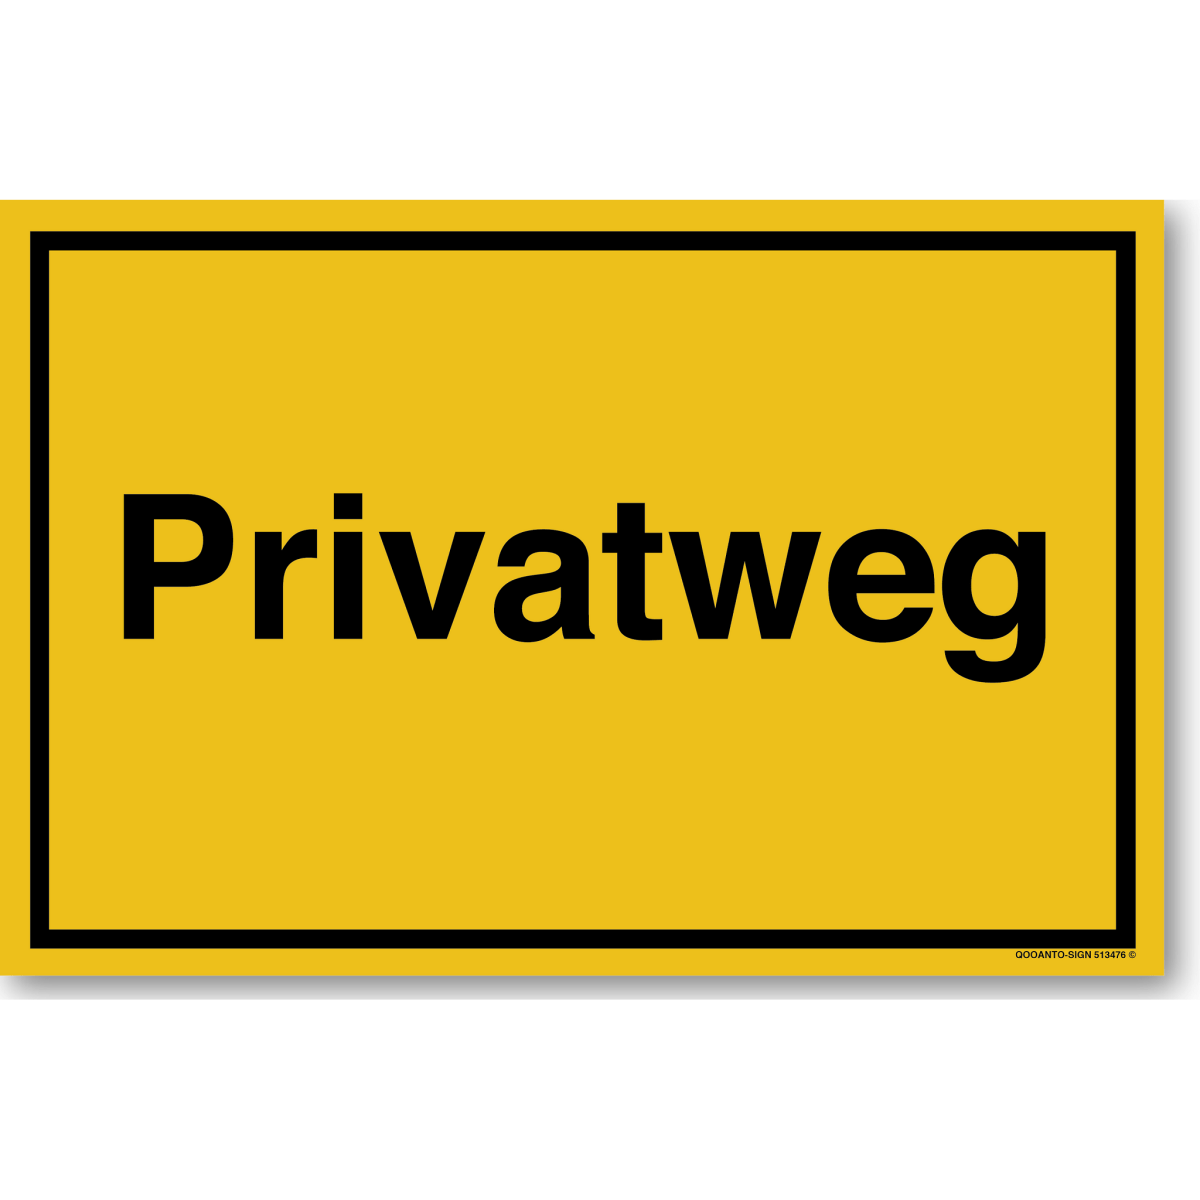 Privatweg Schild oder Aufkleber aus Alu-Verbund oder Selbstklebefolie mit UV-Schutz - QOOANTO-SIGN